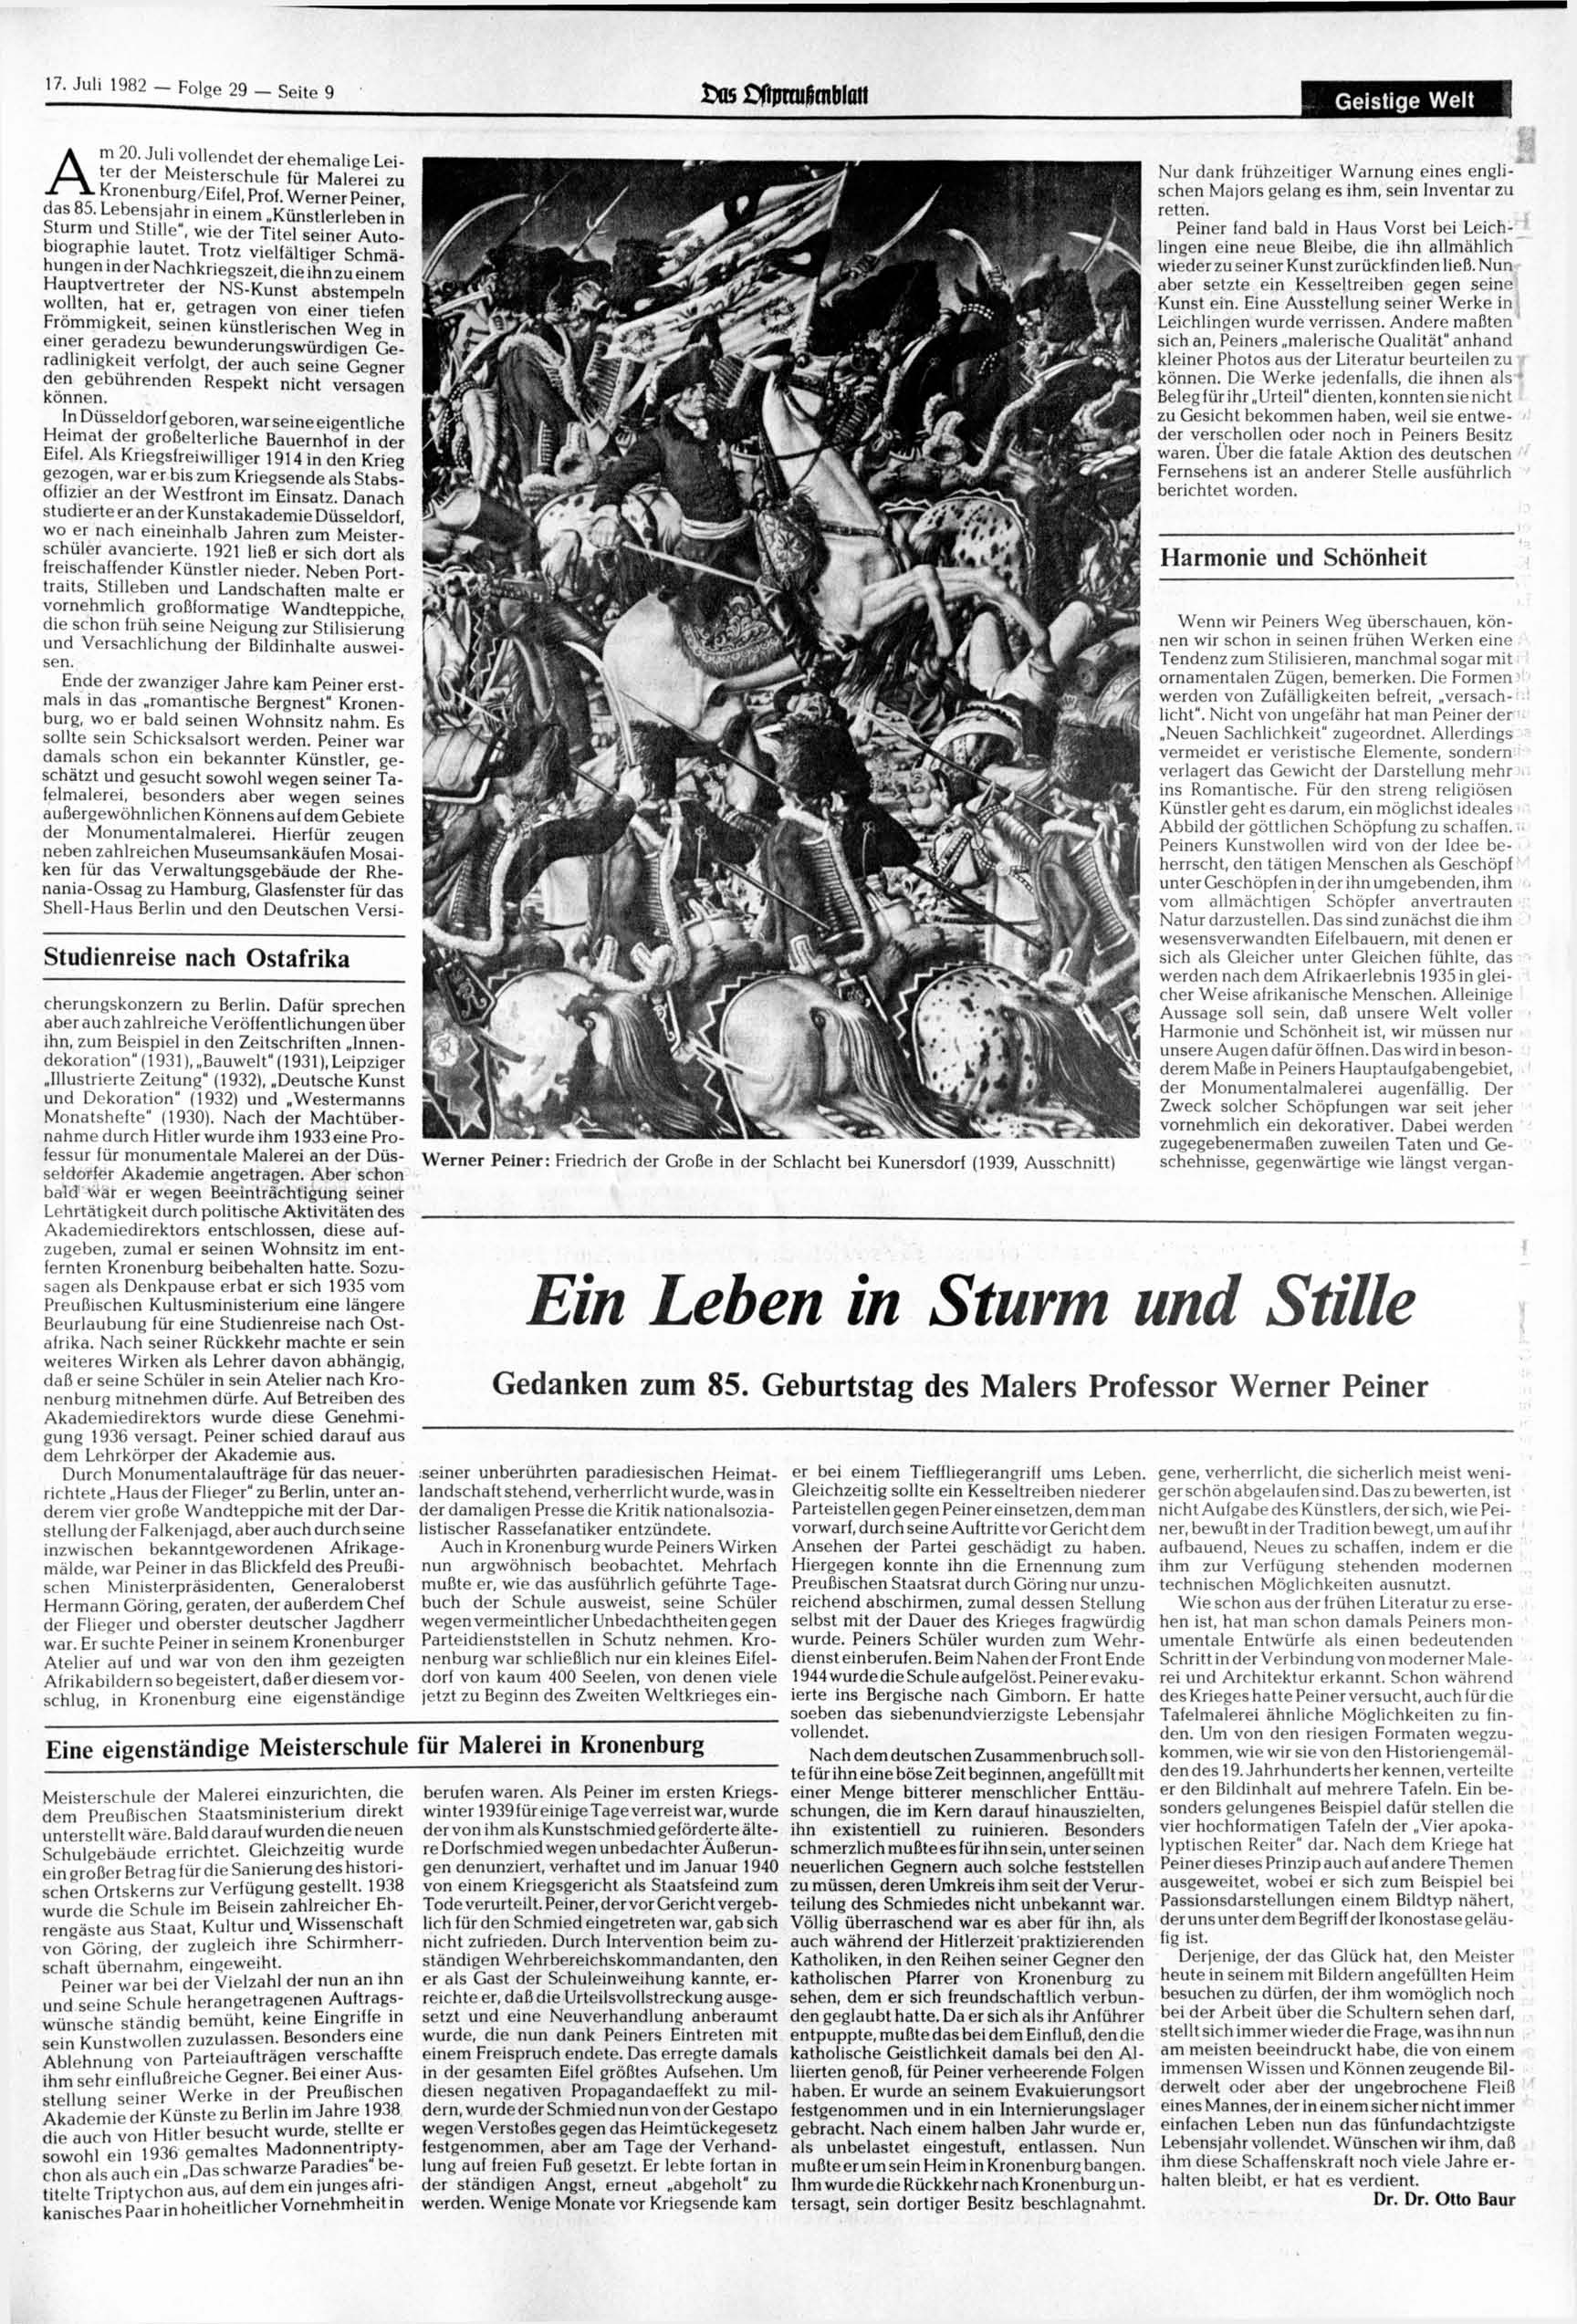 17. 1982 - Folge 29 - Seite 9 Das ßftjmulimblatt Geistige Welt Am 20. vollendet der ehemalige Leiter der Meisterschule für Malerei zu Kronenburg/Eifel, Prof. Werner Peiner, das 85.